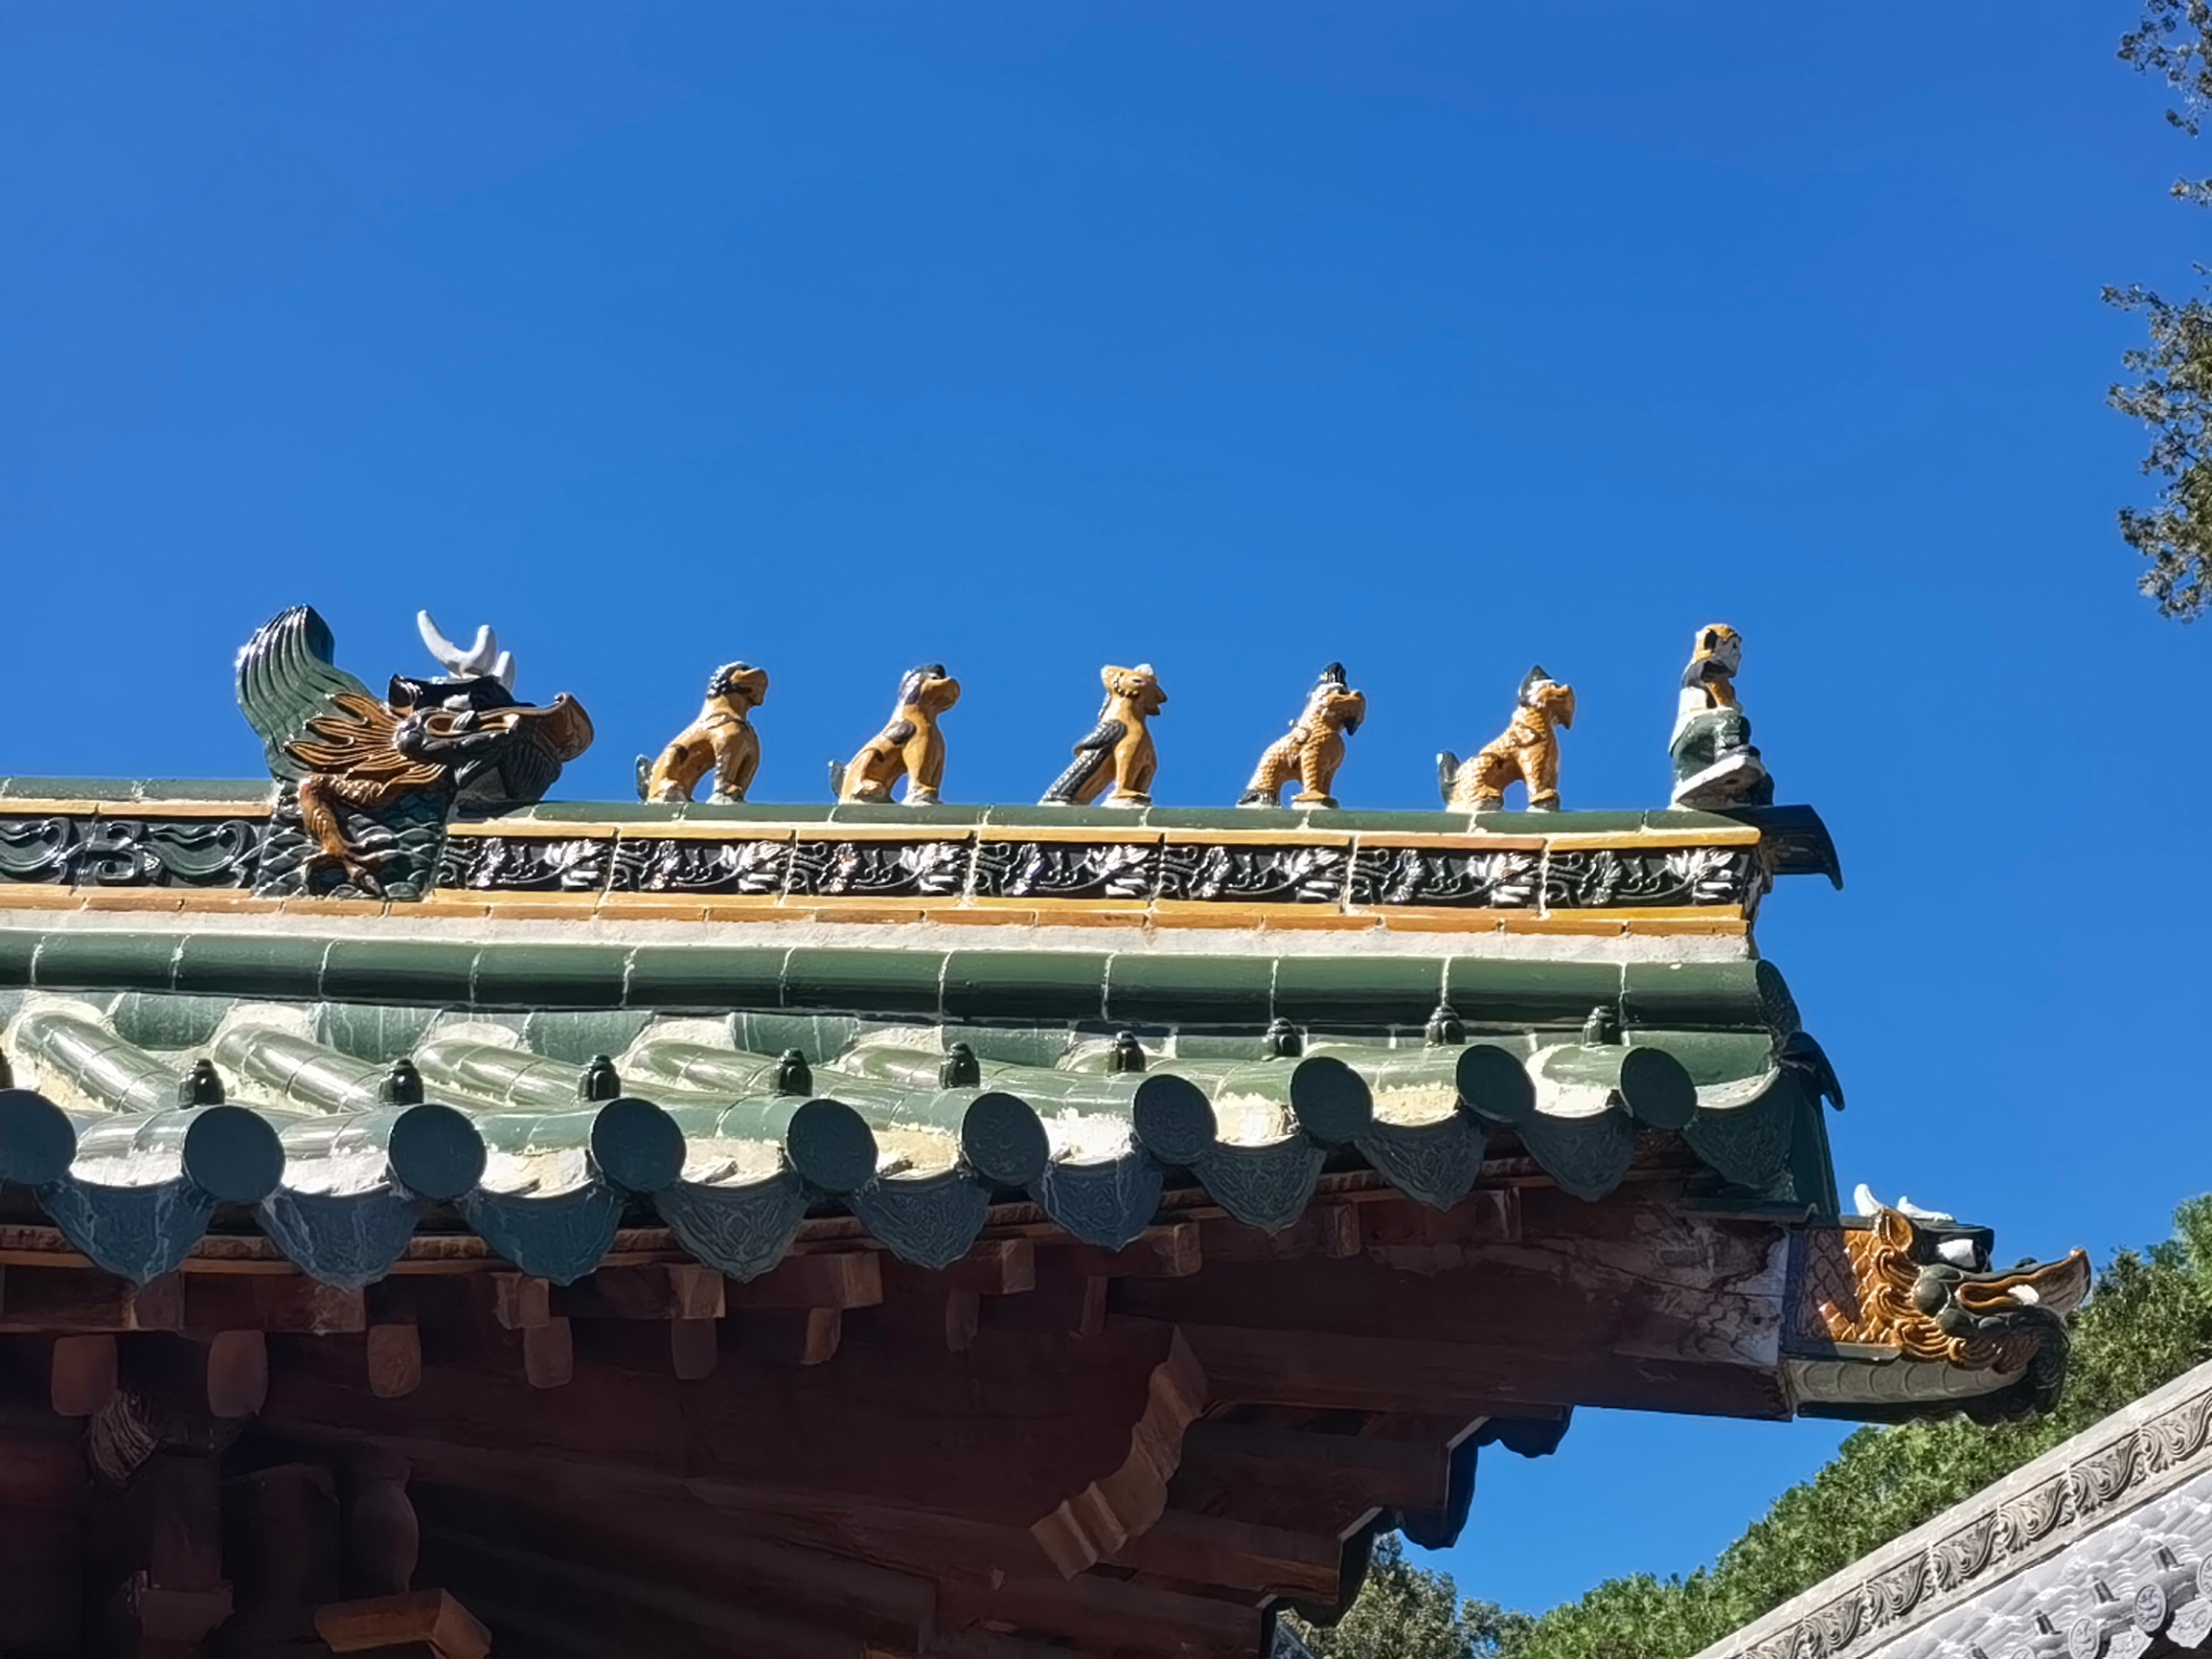 那天路过嵩山，在少林寺大雄宝殿外面天特别蓝，随手拍了一张照片，回头看看还挺是那么回事儿，真的挺好看的